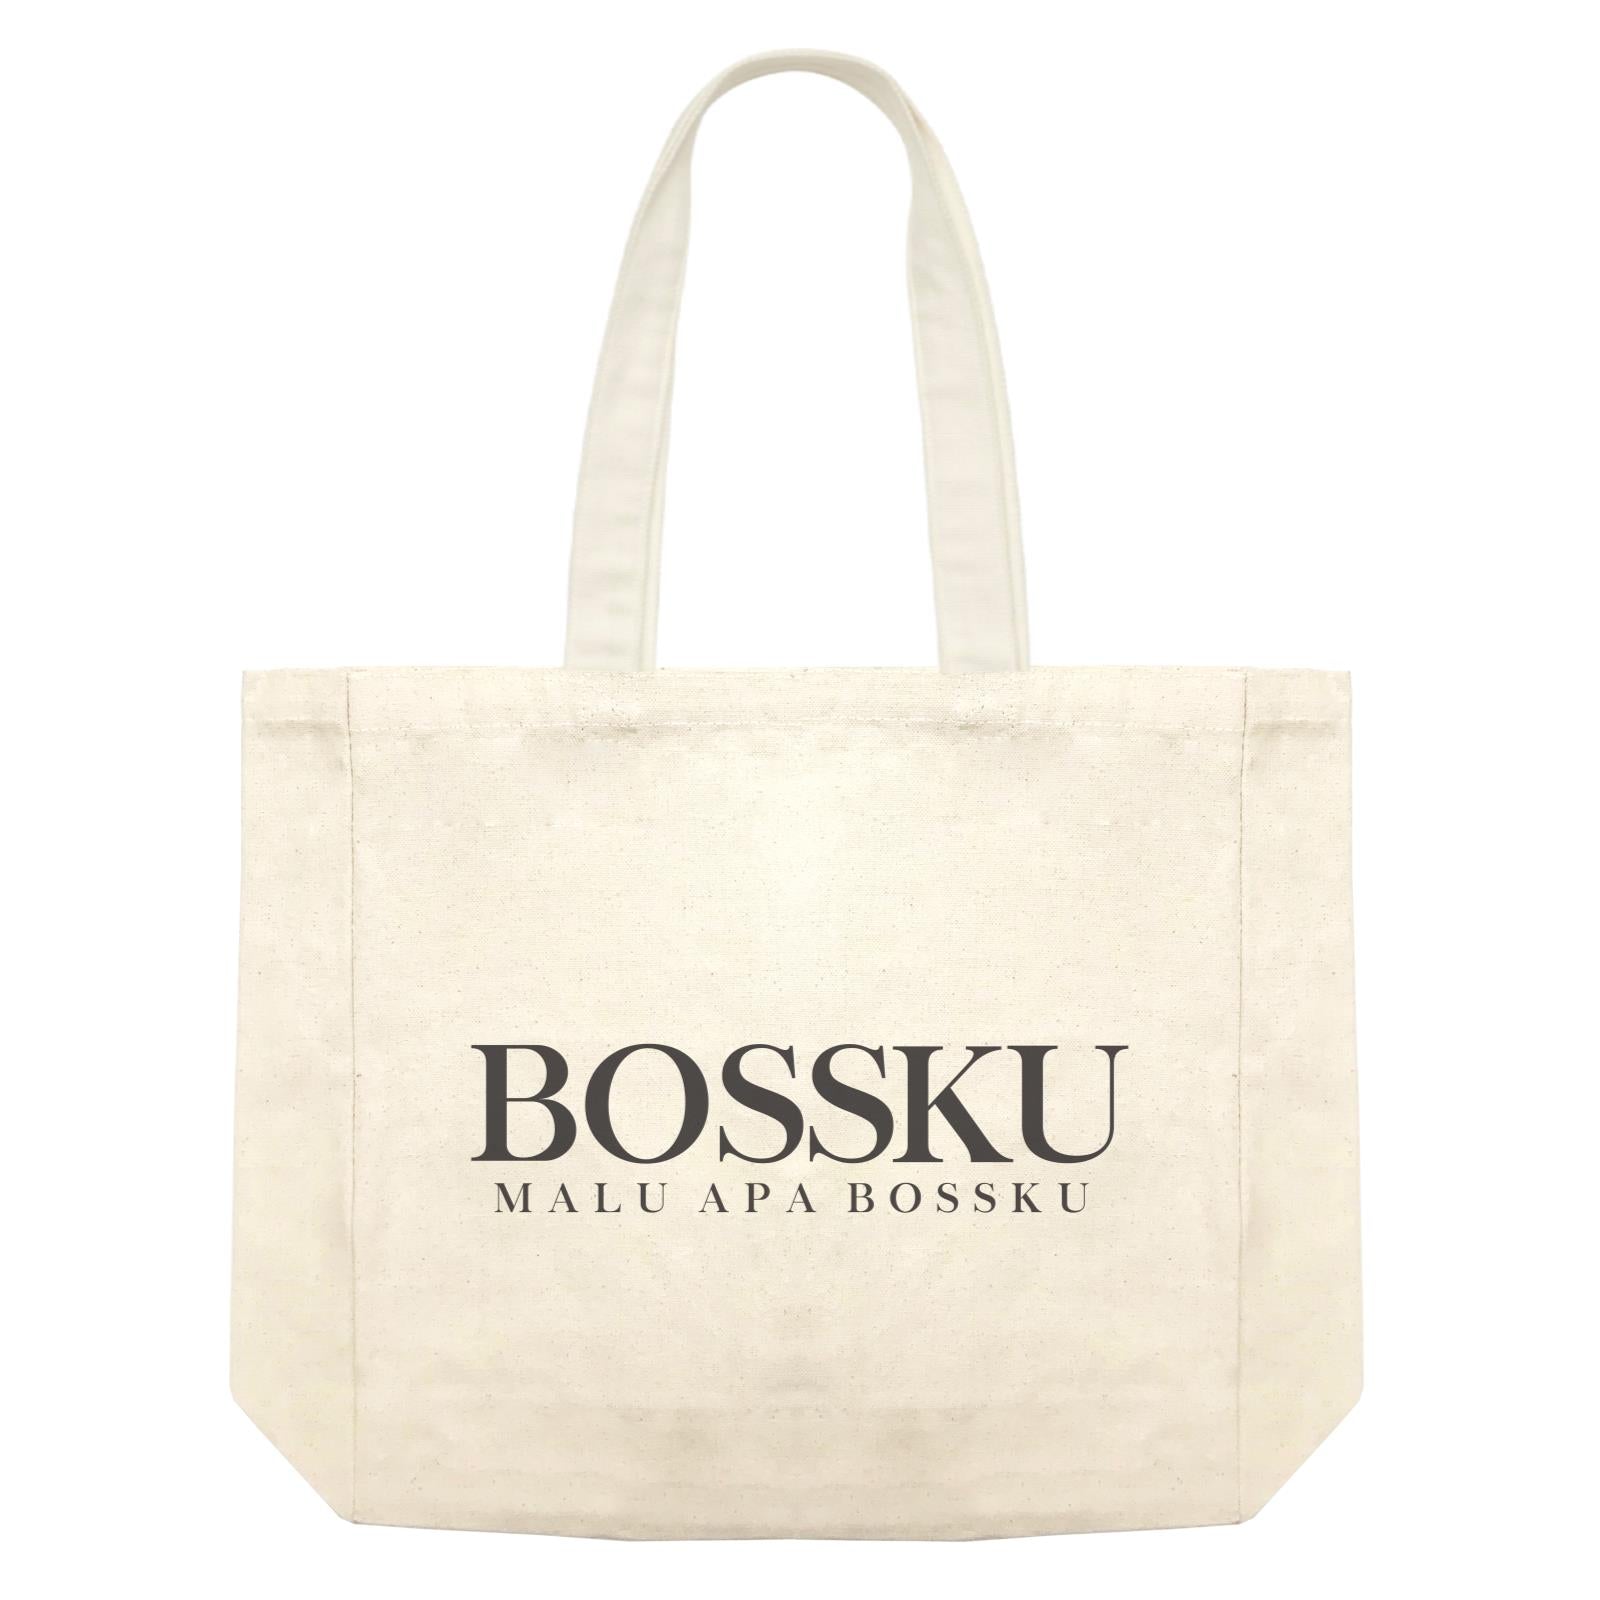 Slang Statement Bossku Malu Apa Bossku Accessories Shopping Bag